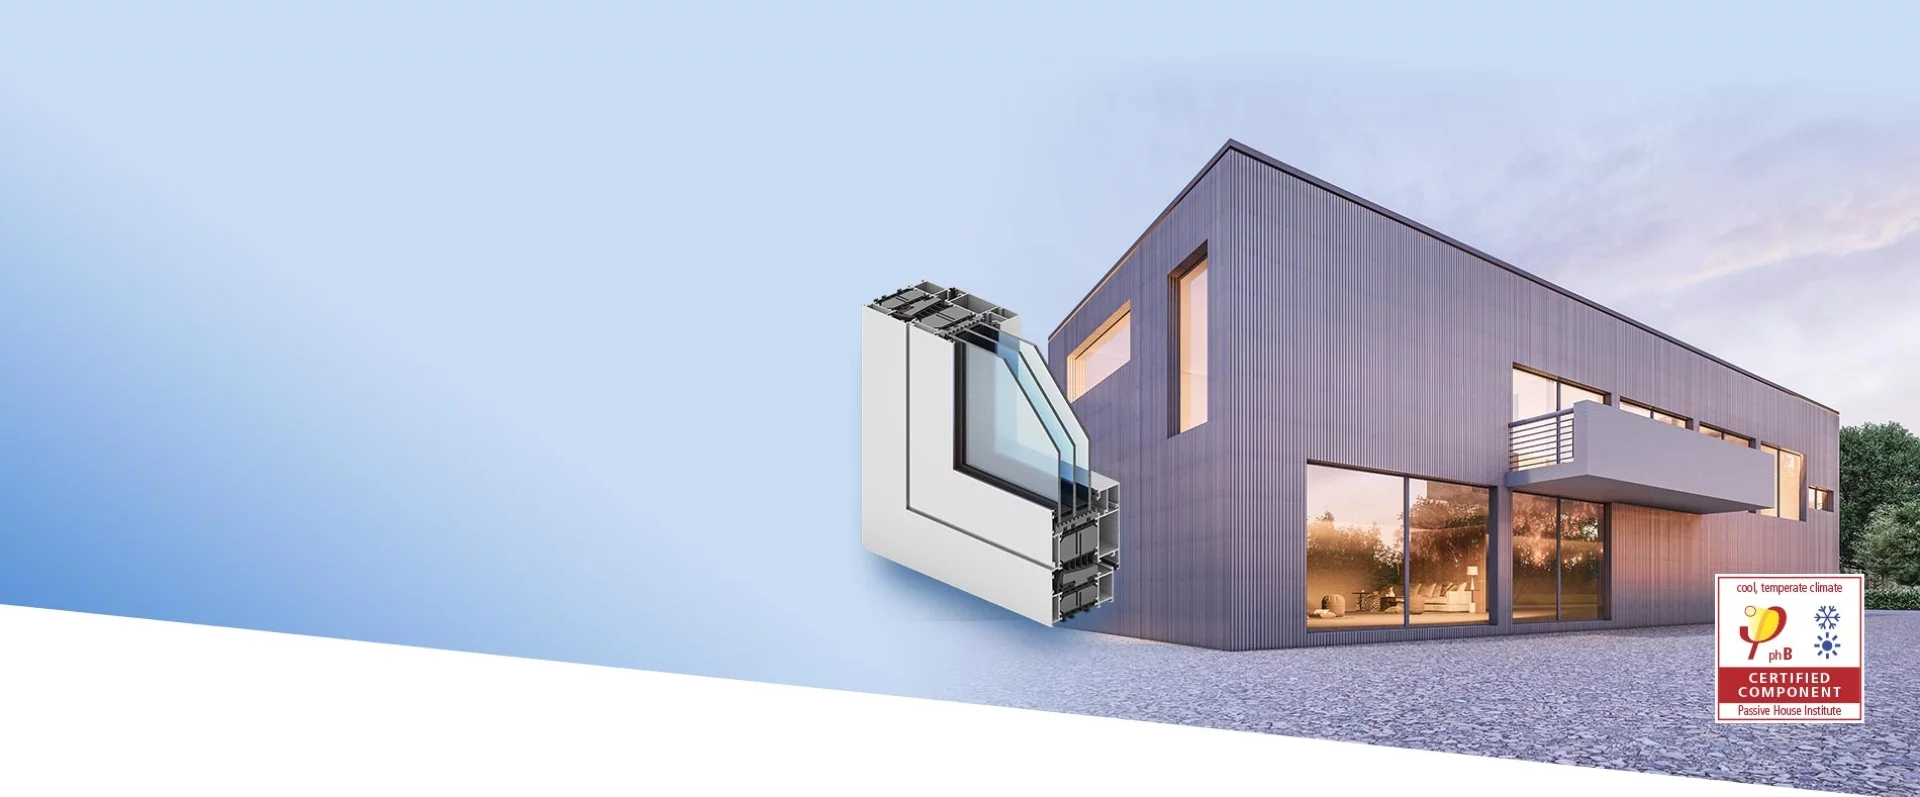 Nowość w ofercie GENESIS 90 Trójkomorowy system aluminiowy przeznaczony do konstruowania okien o podwyższonej izolacyjności termicznej, spełniający wymogi certyfikatu Passive House dla konstrukcji o izolacyjności cieplnej Uw<0,8 W/m2K. 